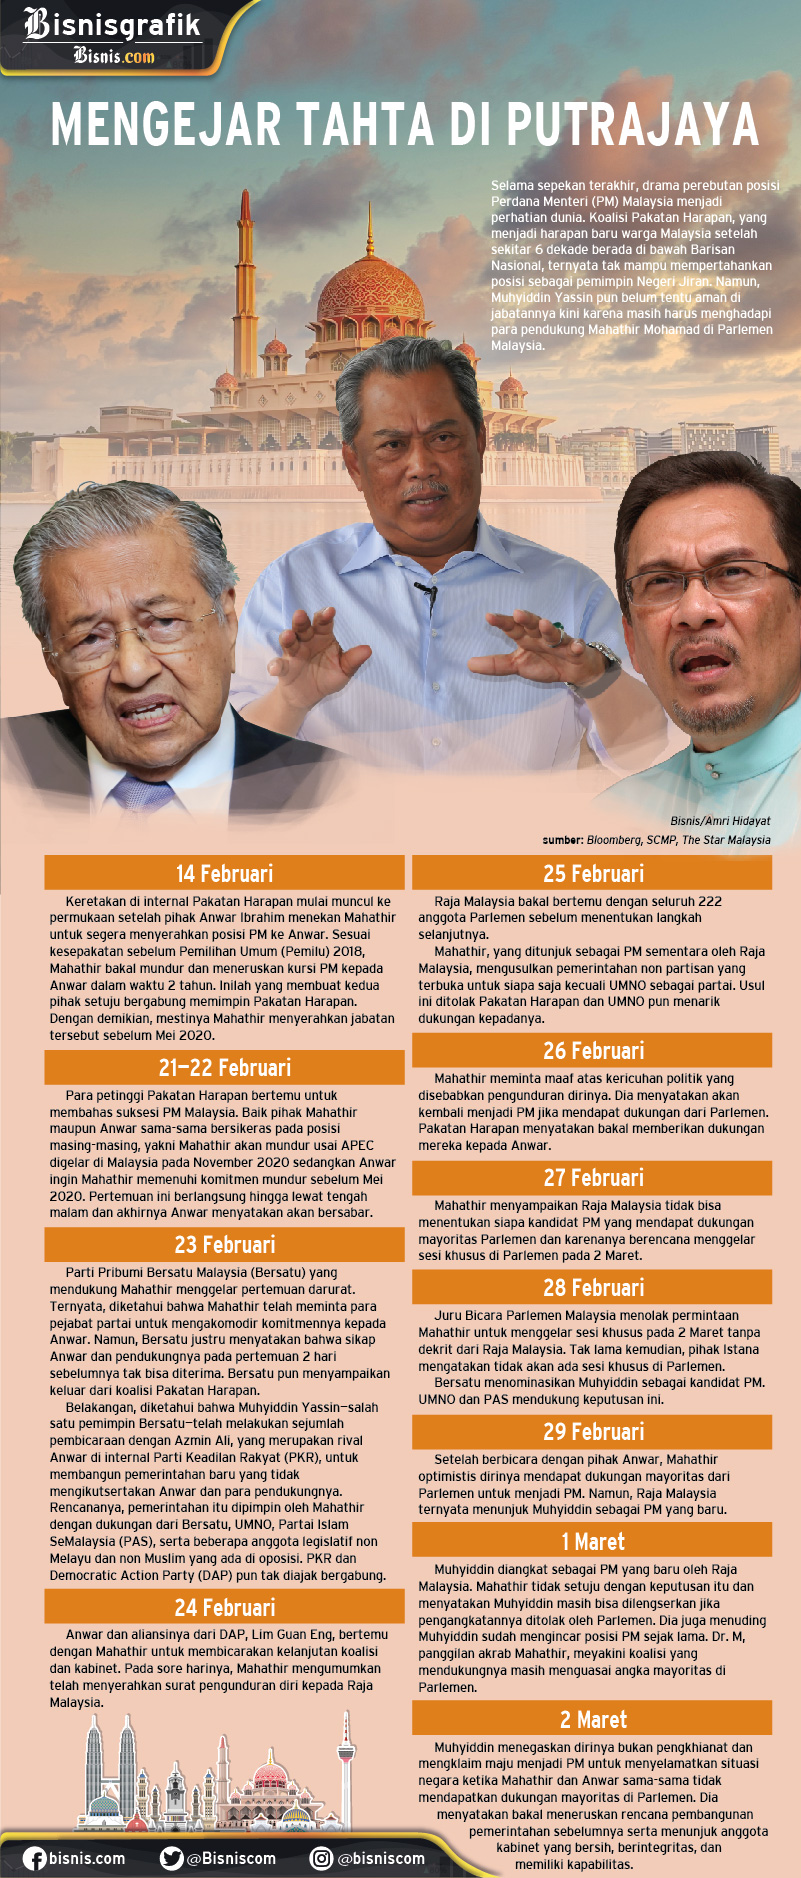  Gaduh Politik di Malaysia